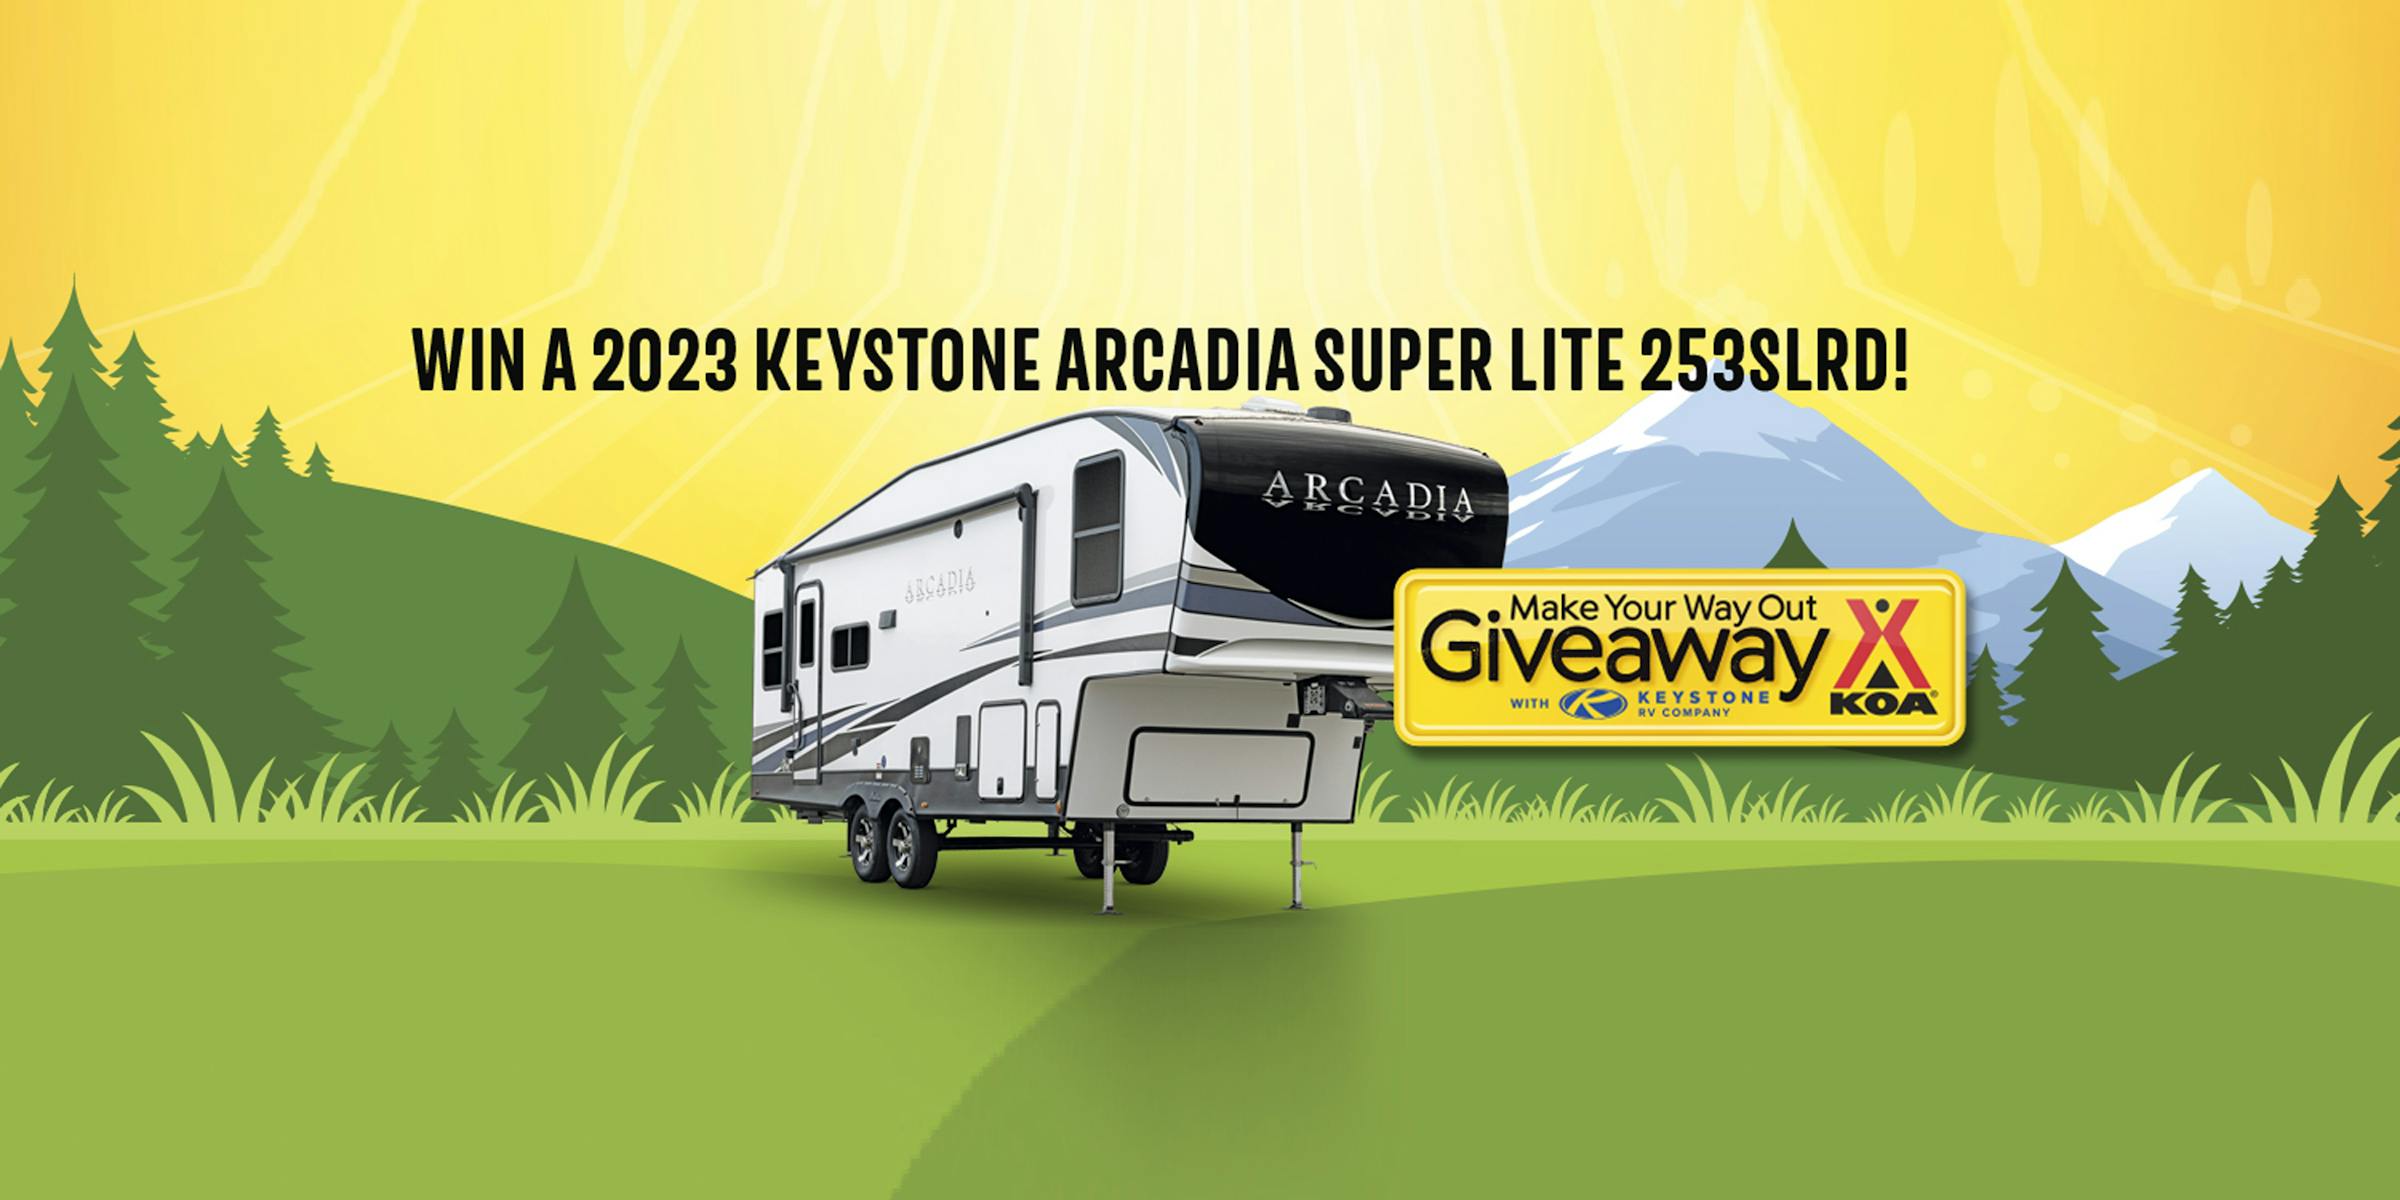 2023 KOA Giveaway Arcadia Superlite! Keystone RV Blog Keystone RV